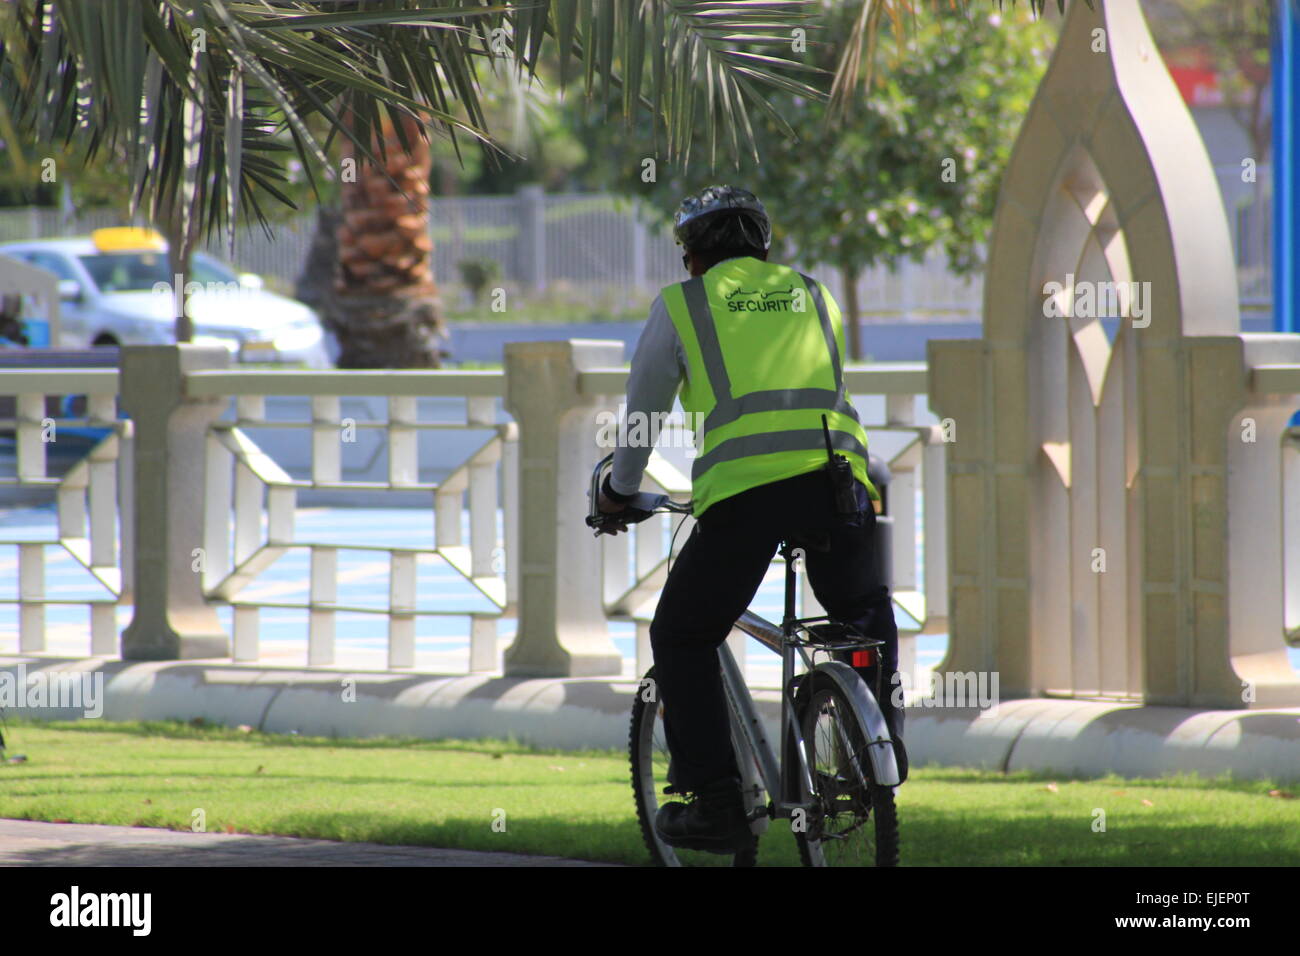 Un garde de sécurité portant un gilet visible et uniforme patrouille sur son vélo dans un parc par une journée ensoleillée Banque D'Images